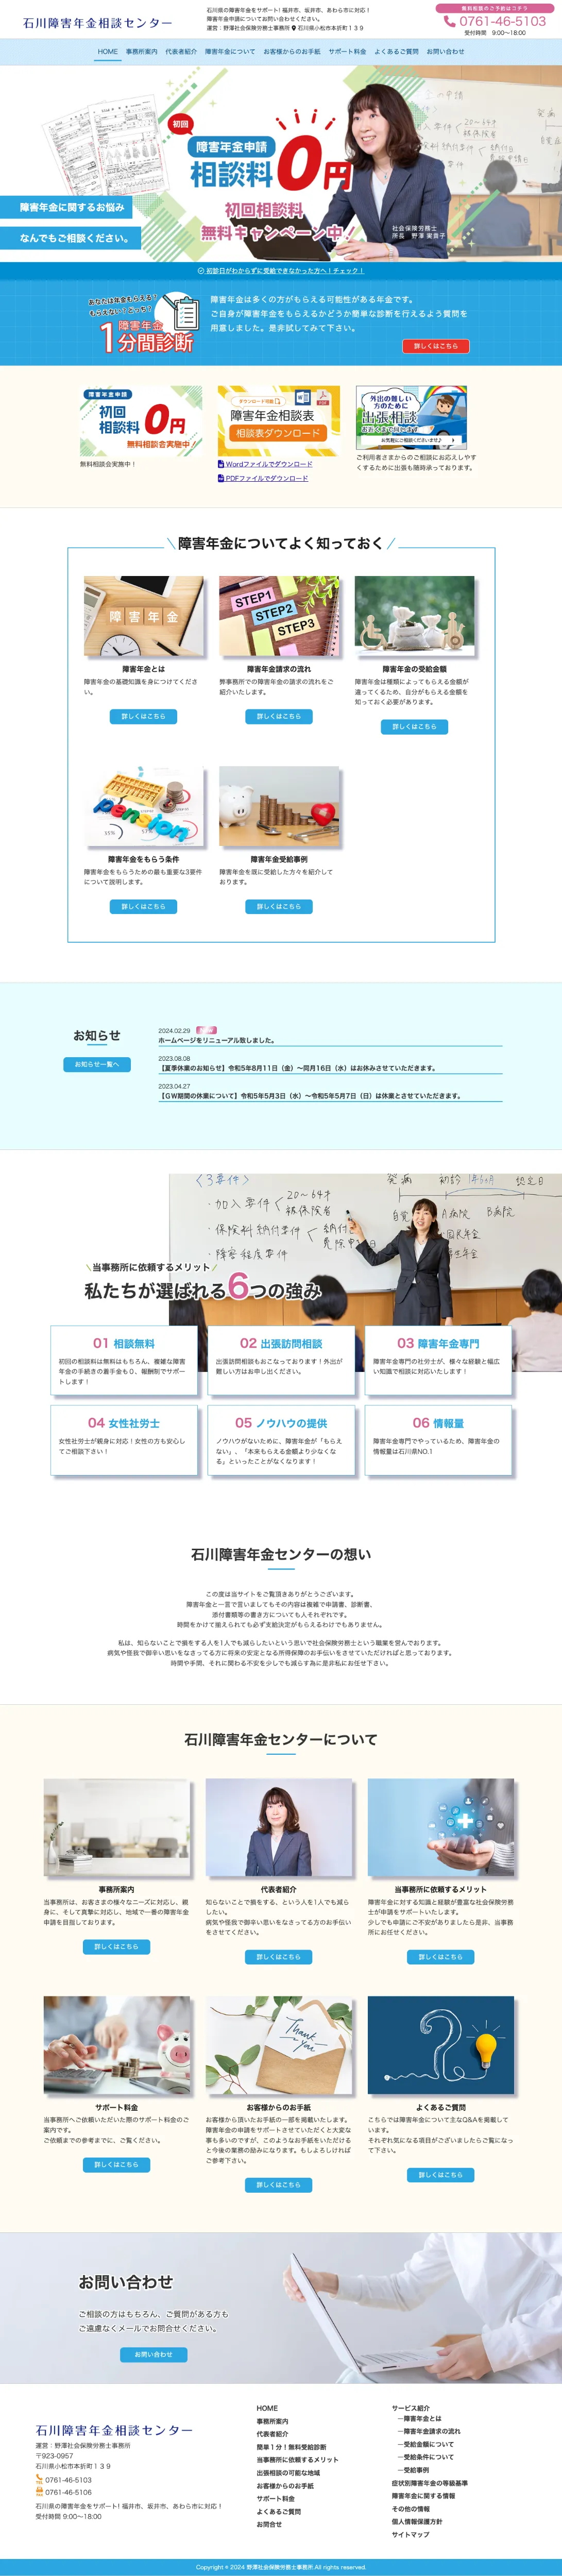 株式会社メディアプライムスタイル Webサイト制作実績 石川年金障害センター パソコン表示画像